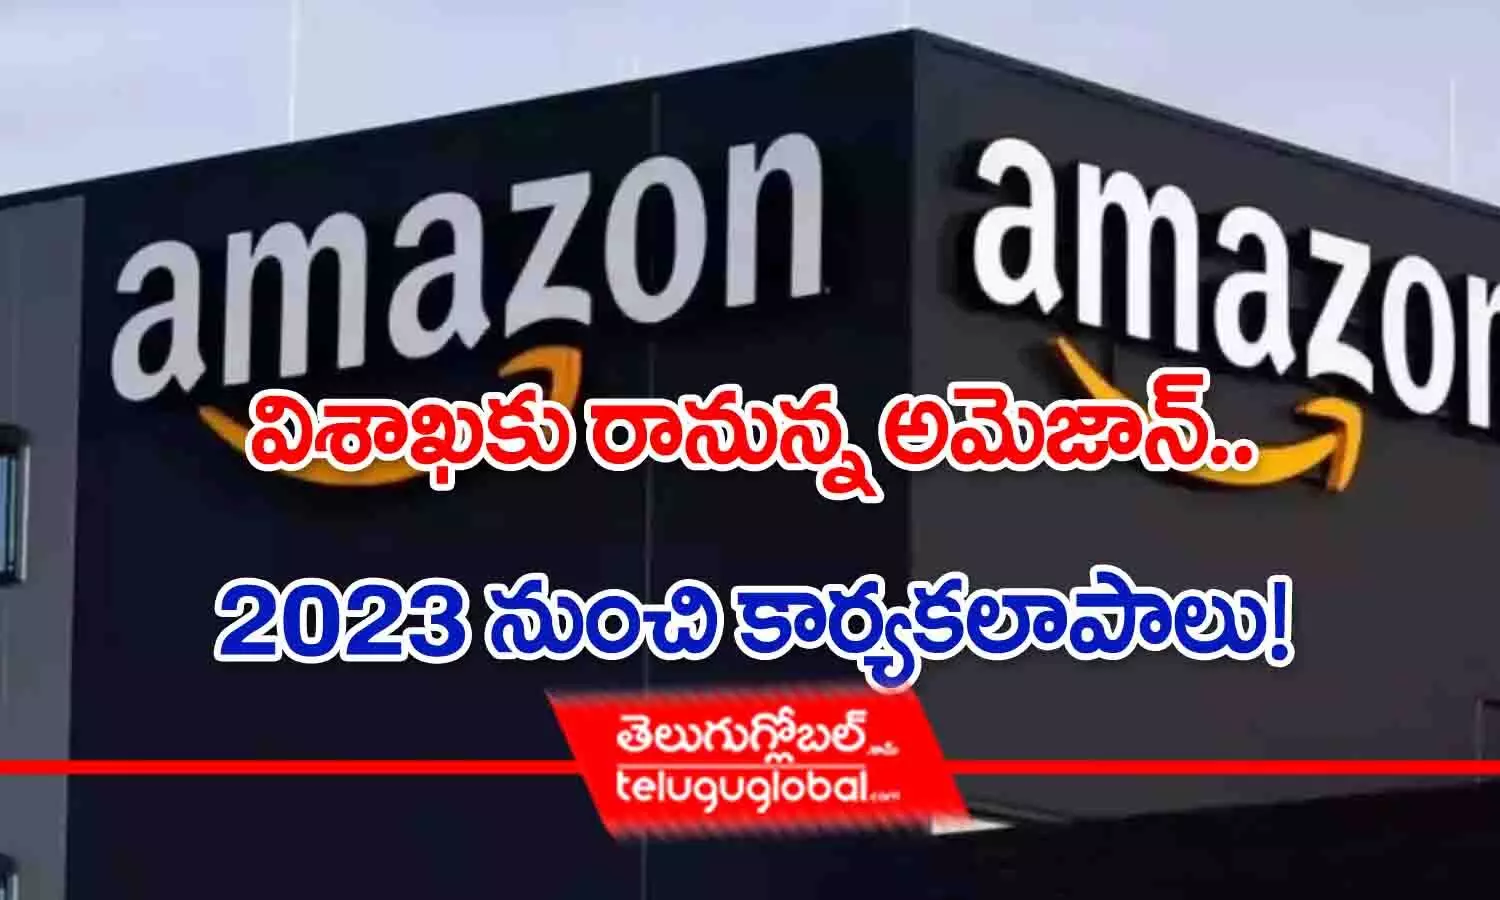 Amazon company in Vizag